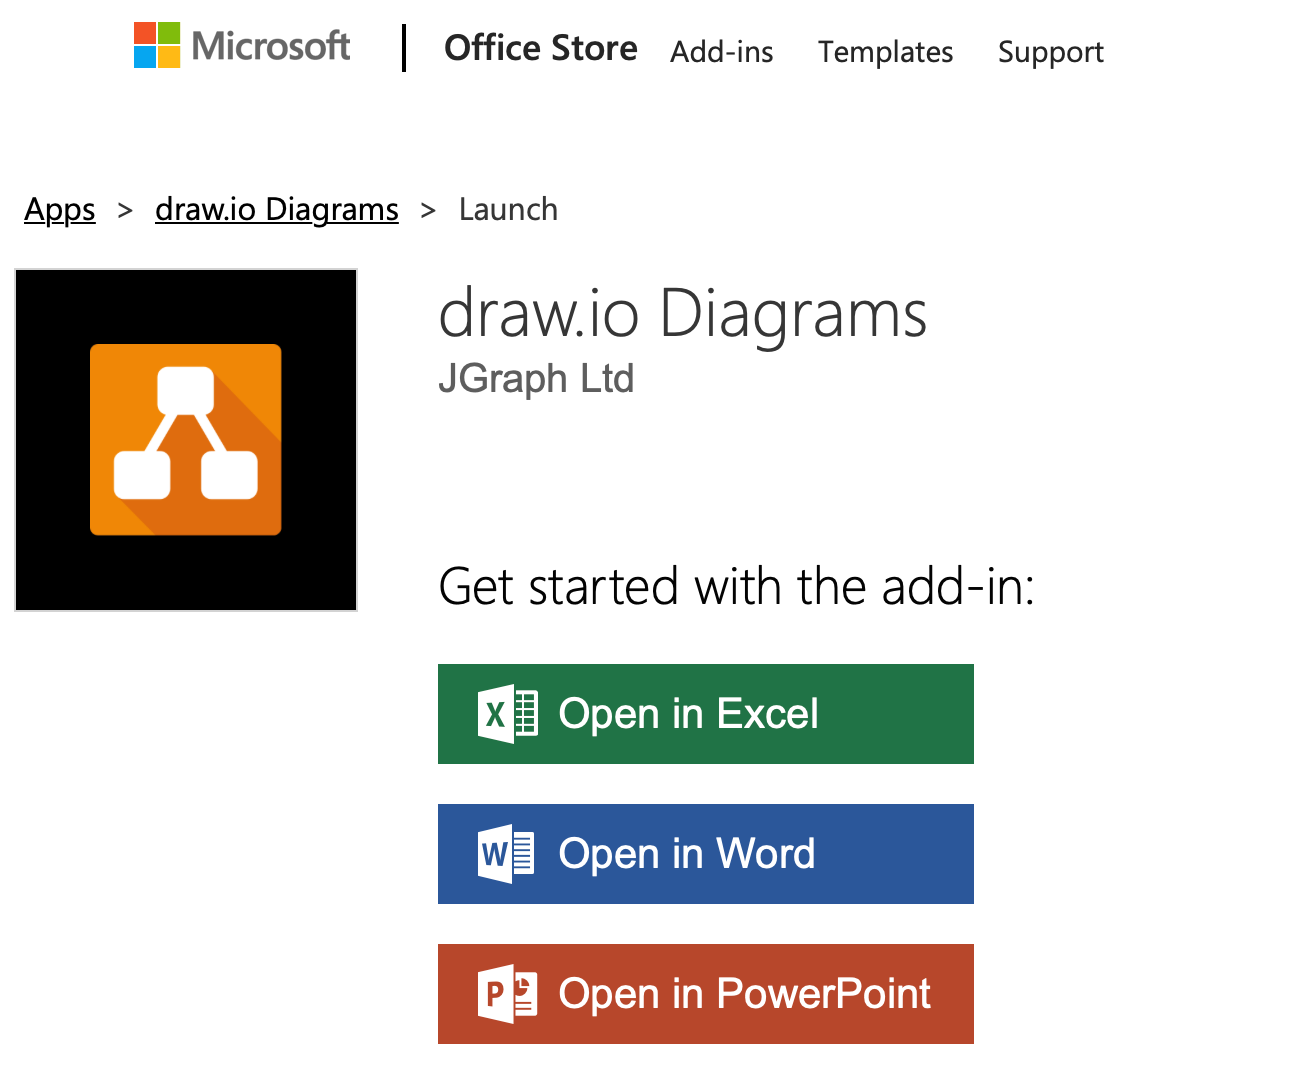 Install the draw.io diagrams add-in via Microsoft